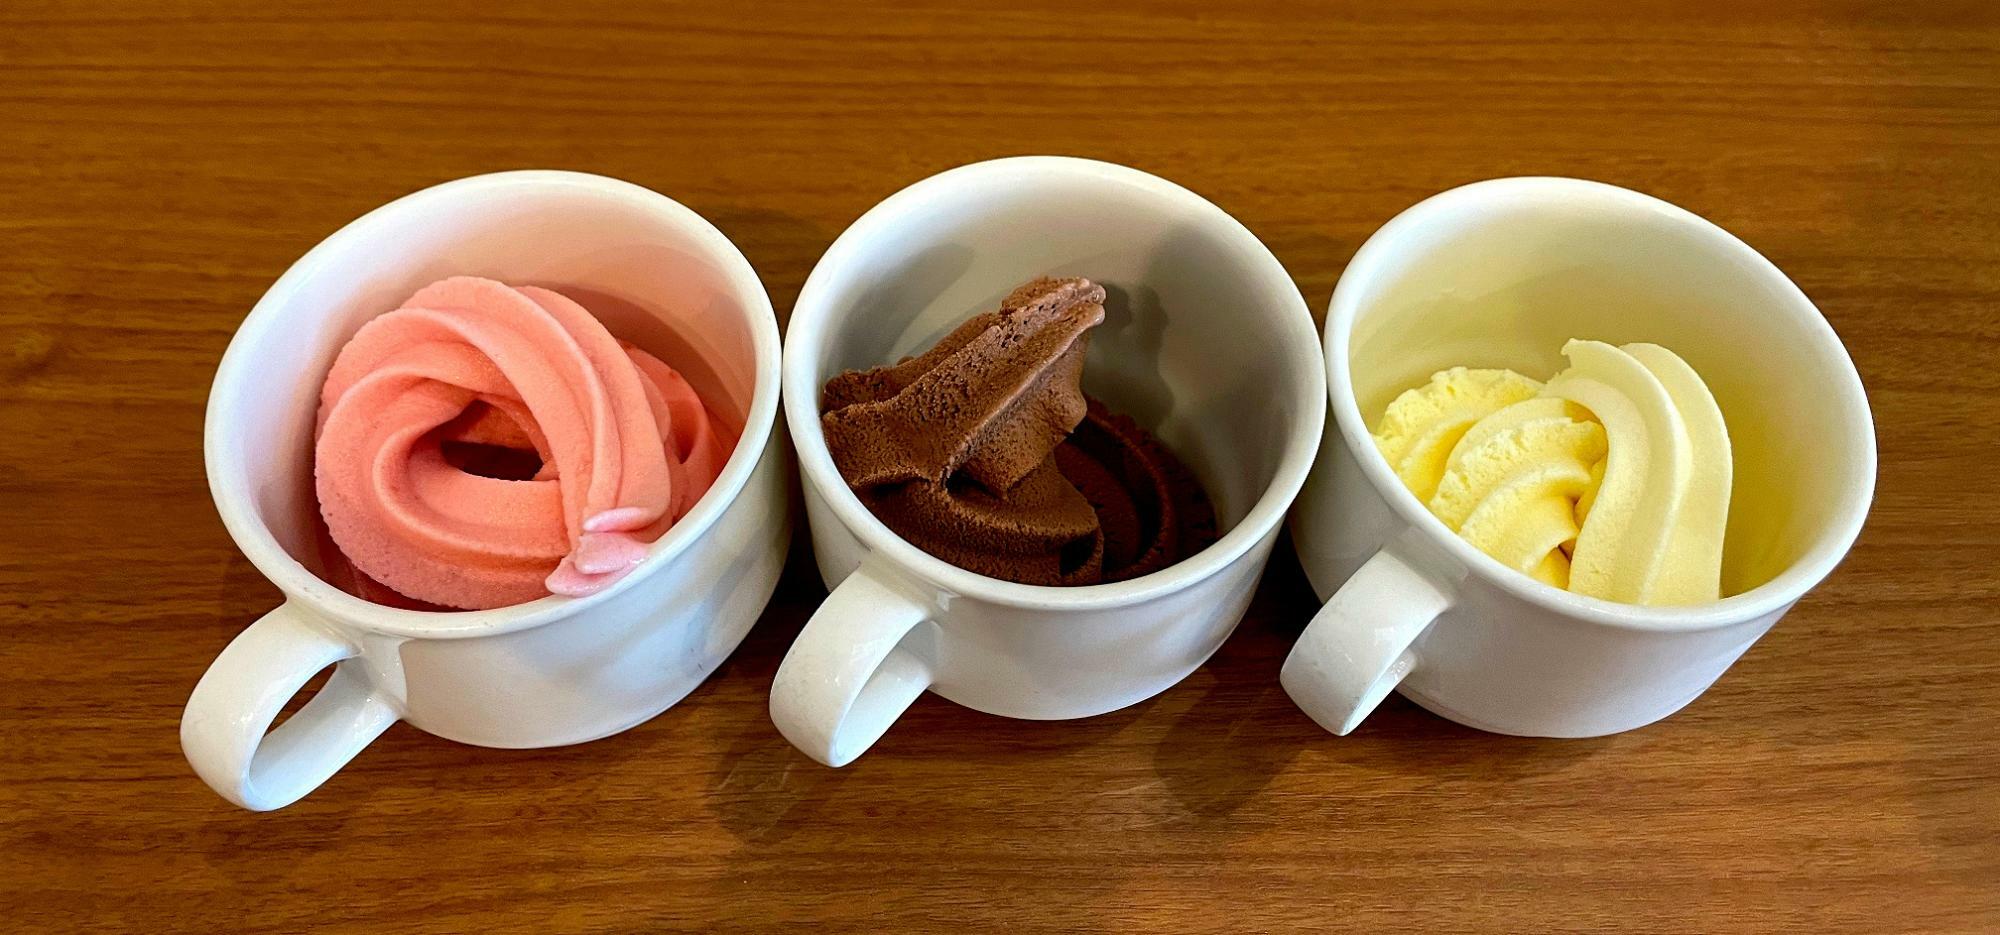 アイスは3種類。どれか一つが無料で食べられます。